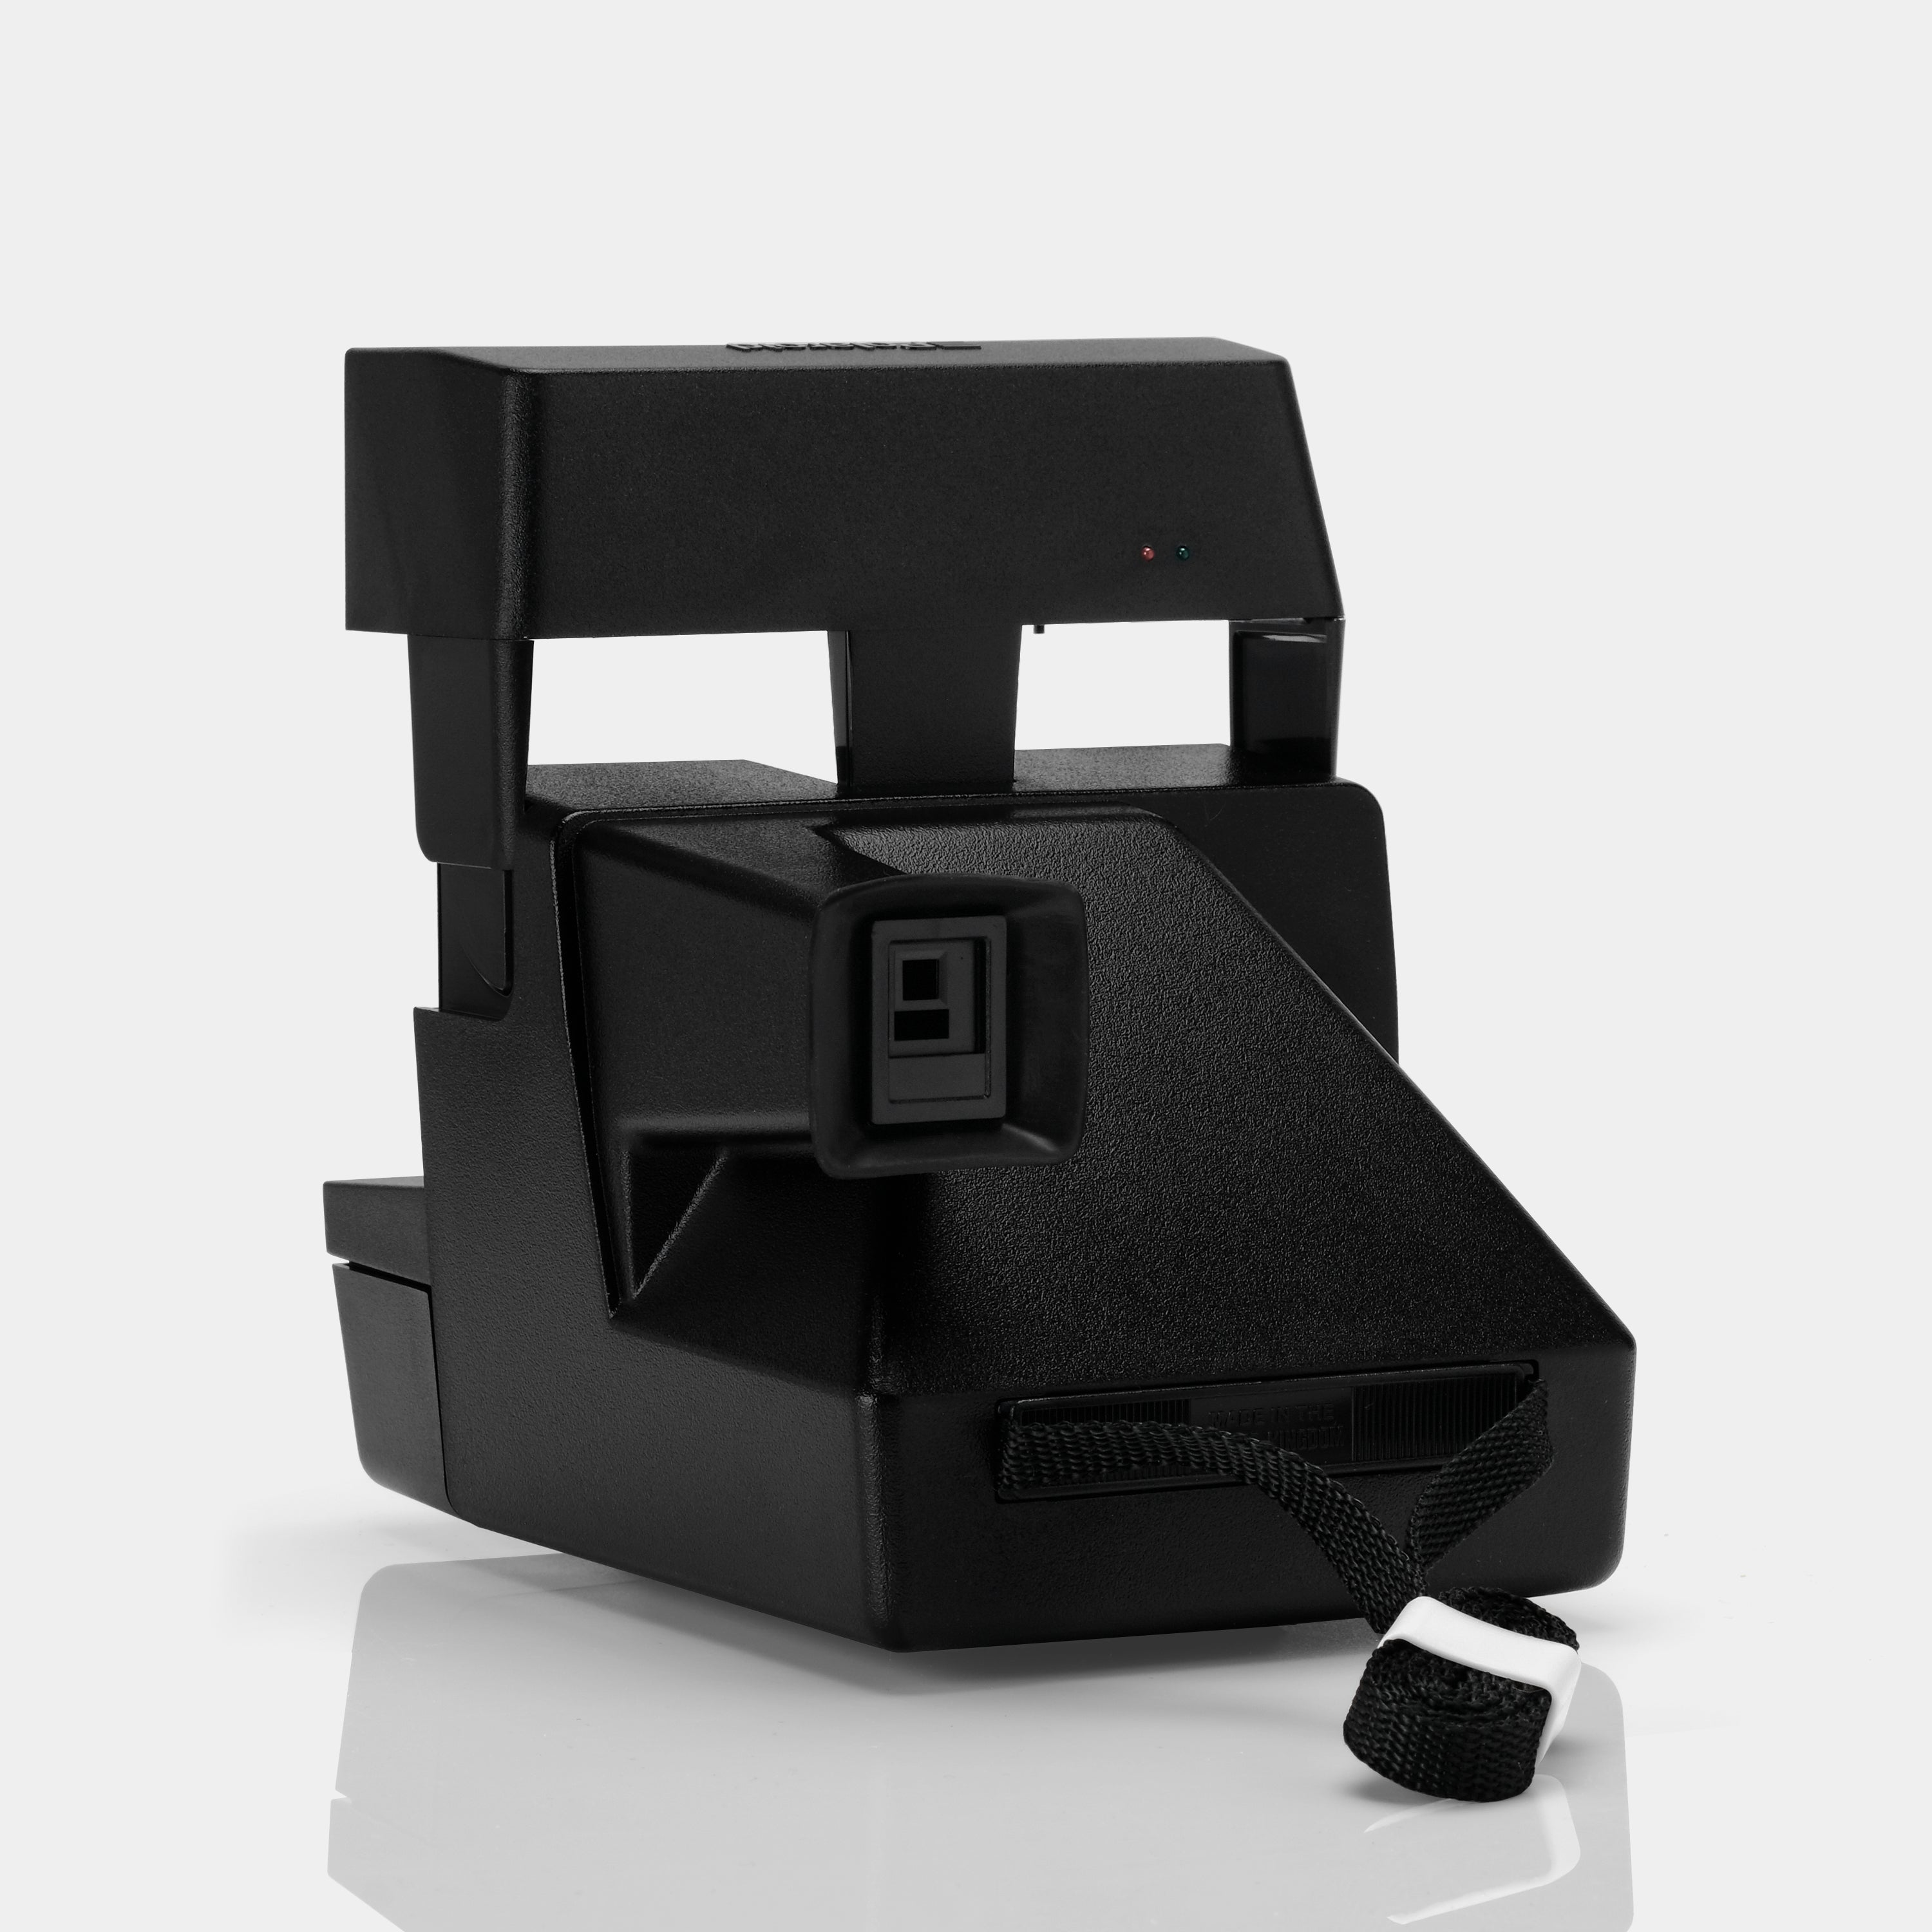 Polaroid 600 Invent America Instant Film Camera